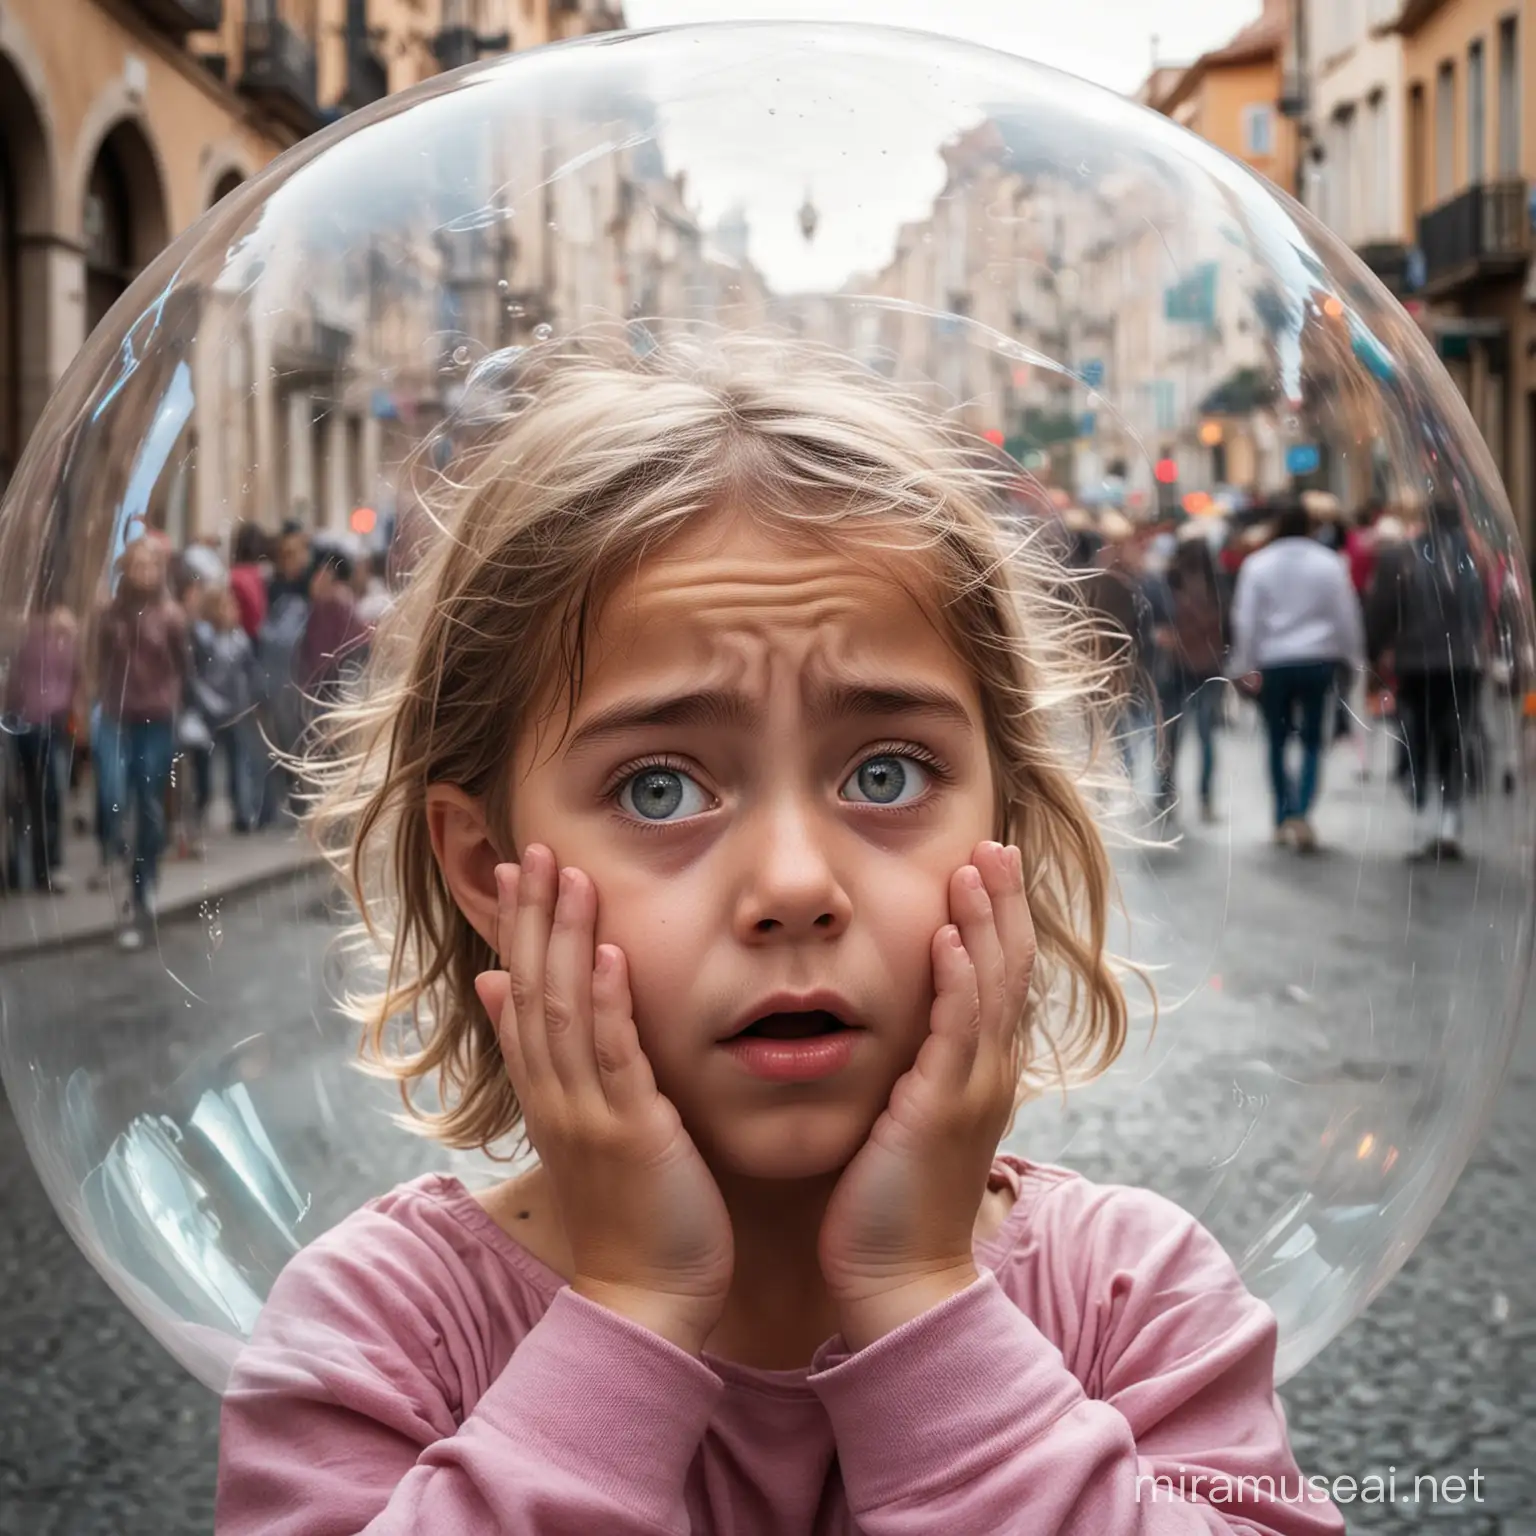 Fearful Girl in Bubble on Busy Street